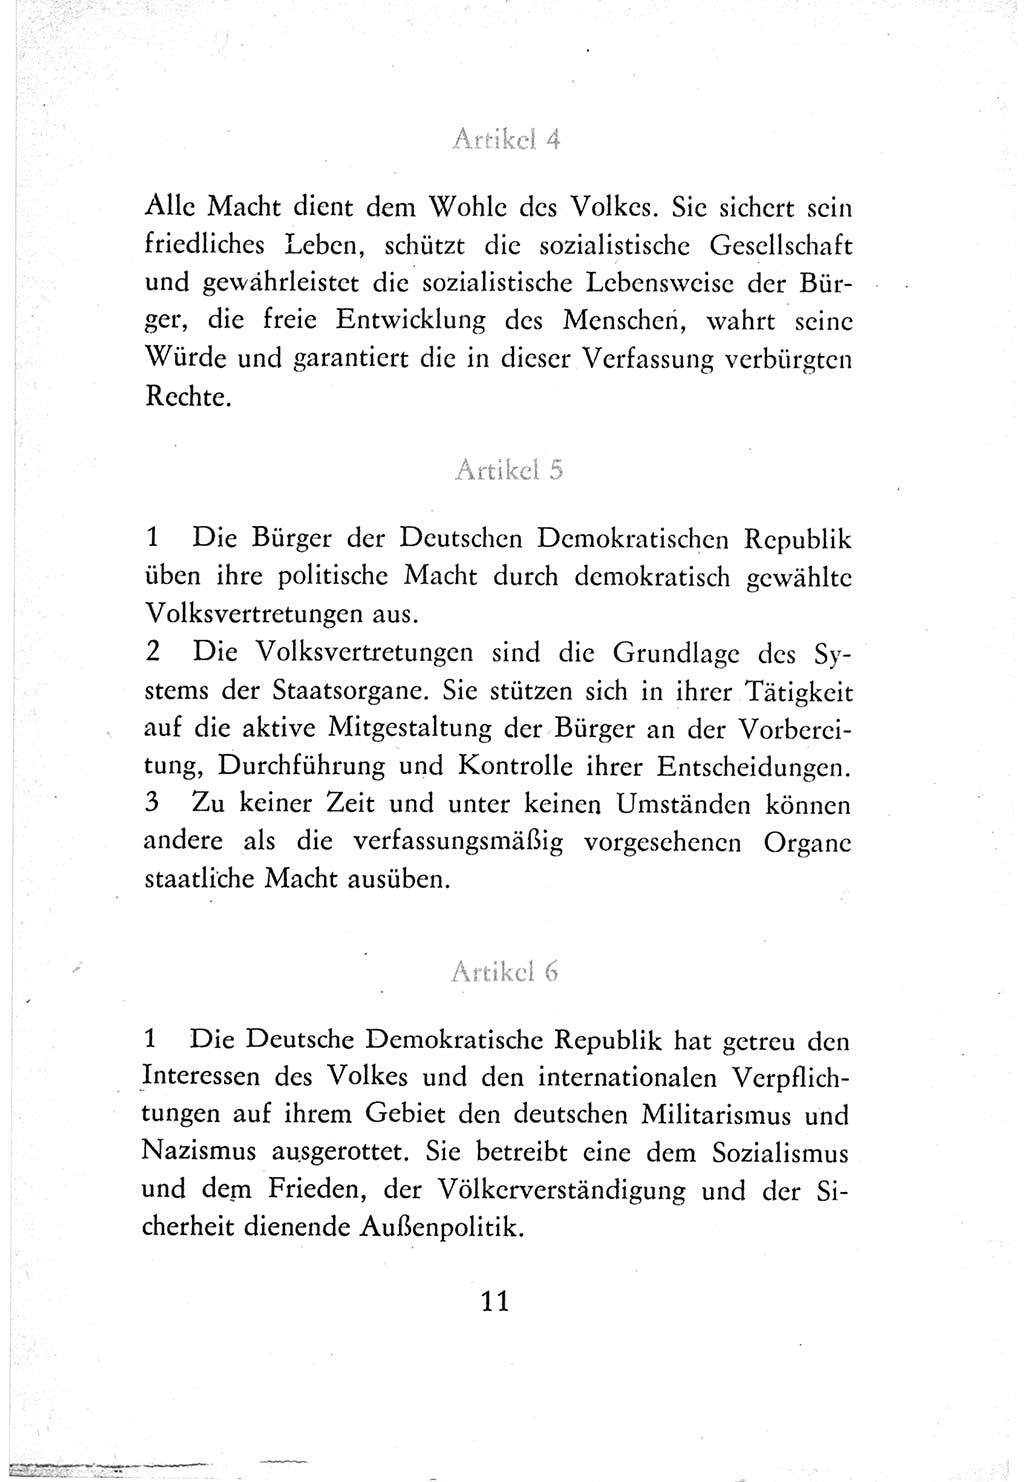 Verfassung der Deutschen Demokratischen Republik (DDR) vom 7. Oktober 1974, Seite 11 (Verf. DDR 1974, S. 11)